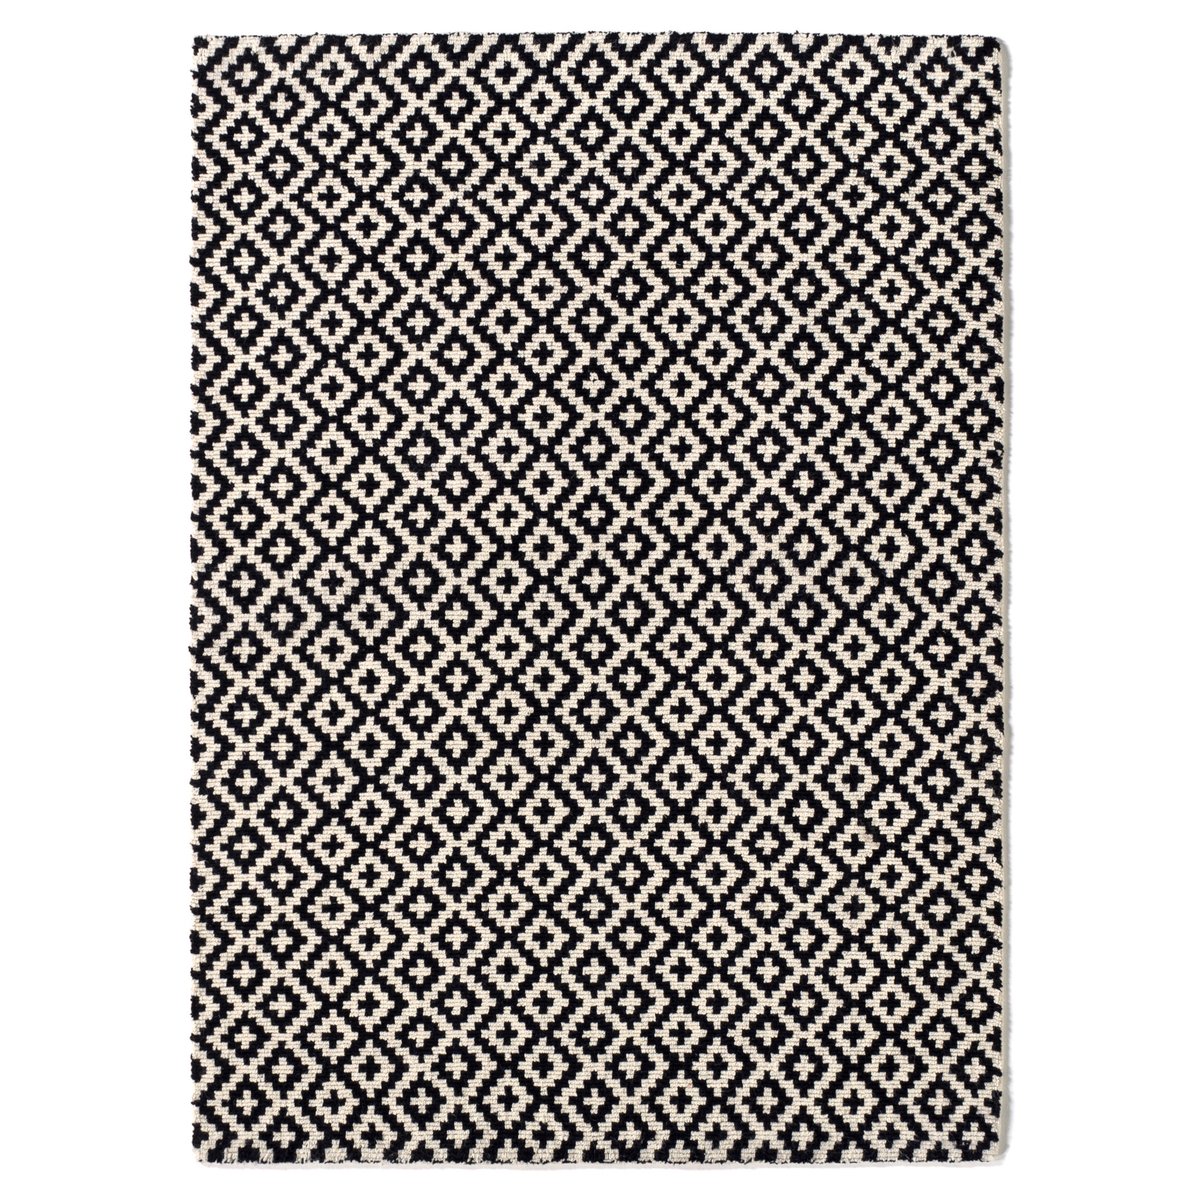 Ковер La Redoute Шерстяной ворсистый Nevio 160 x 230 см черный, размер 160 x 230 см